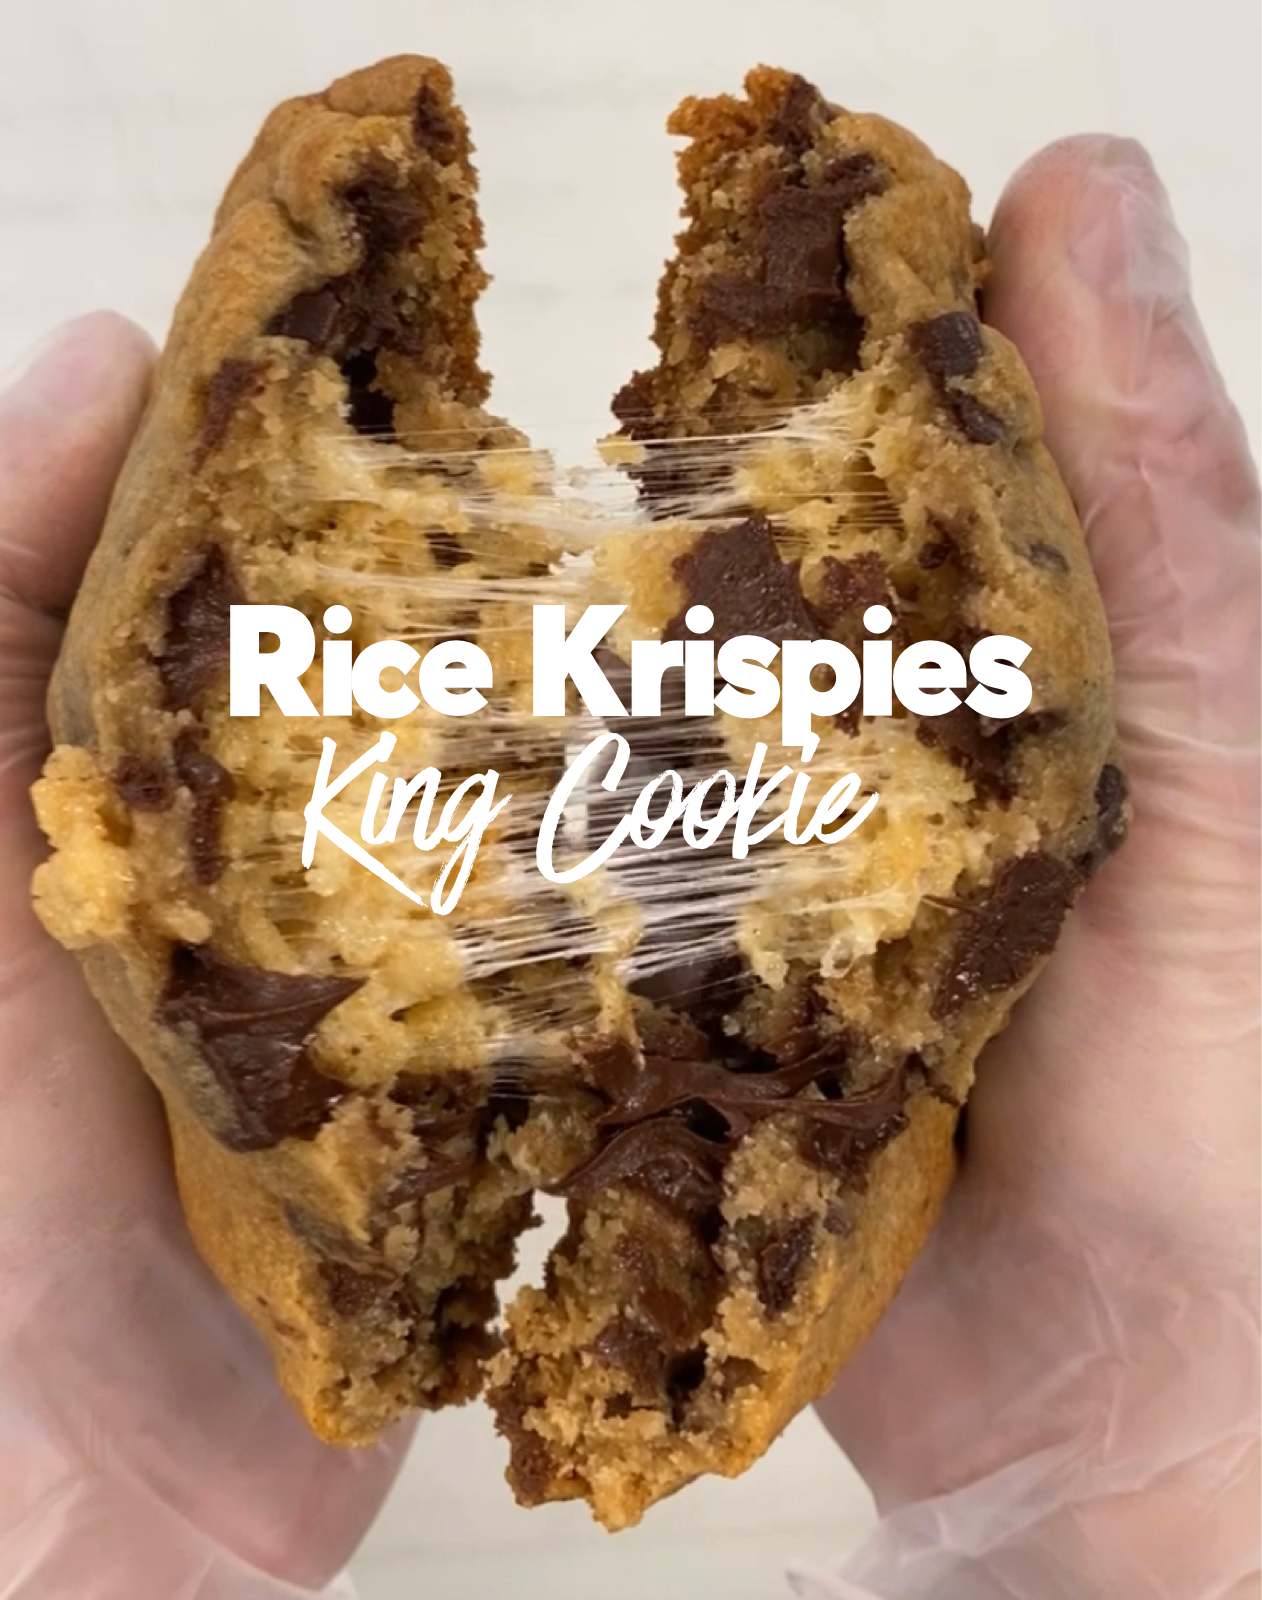 Rice Krispies King Cookie